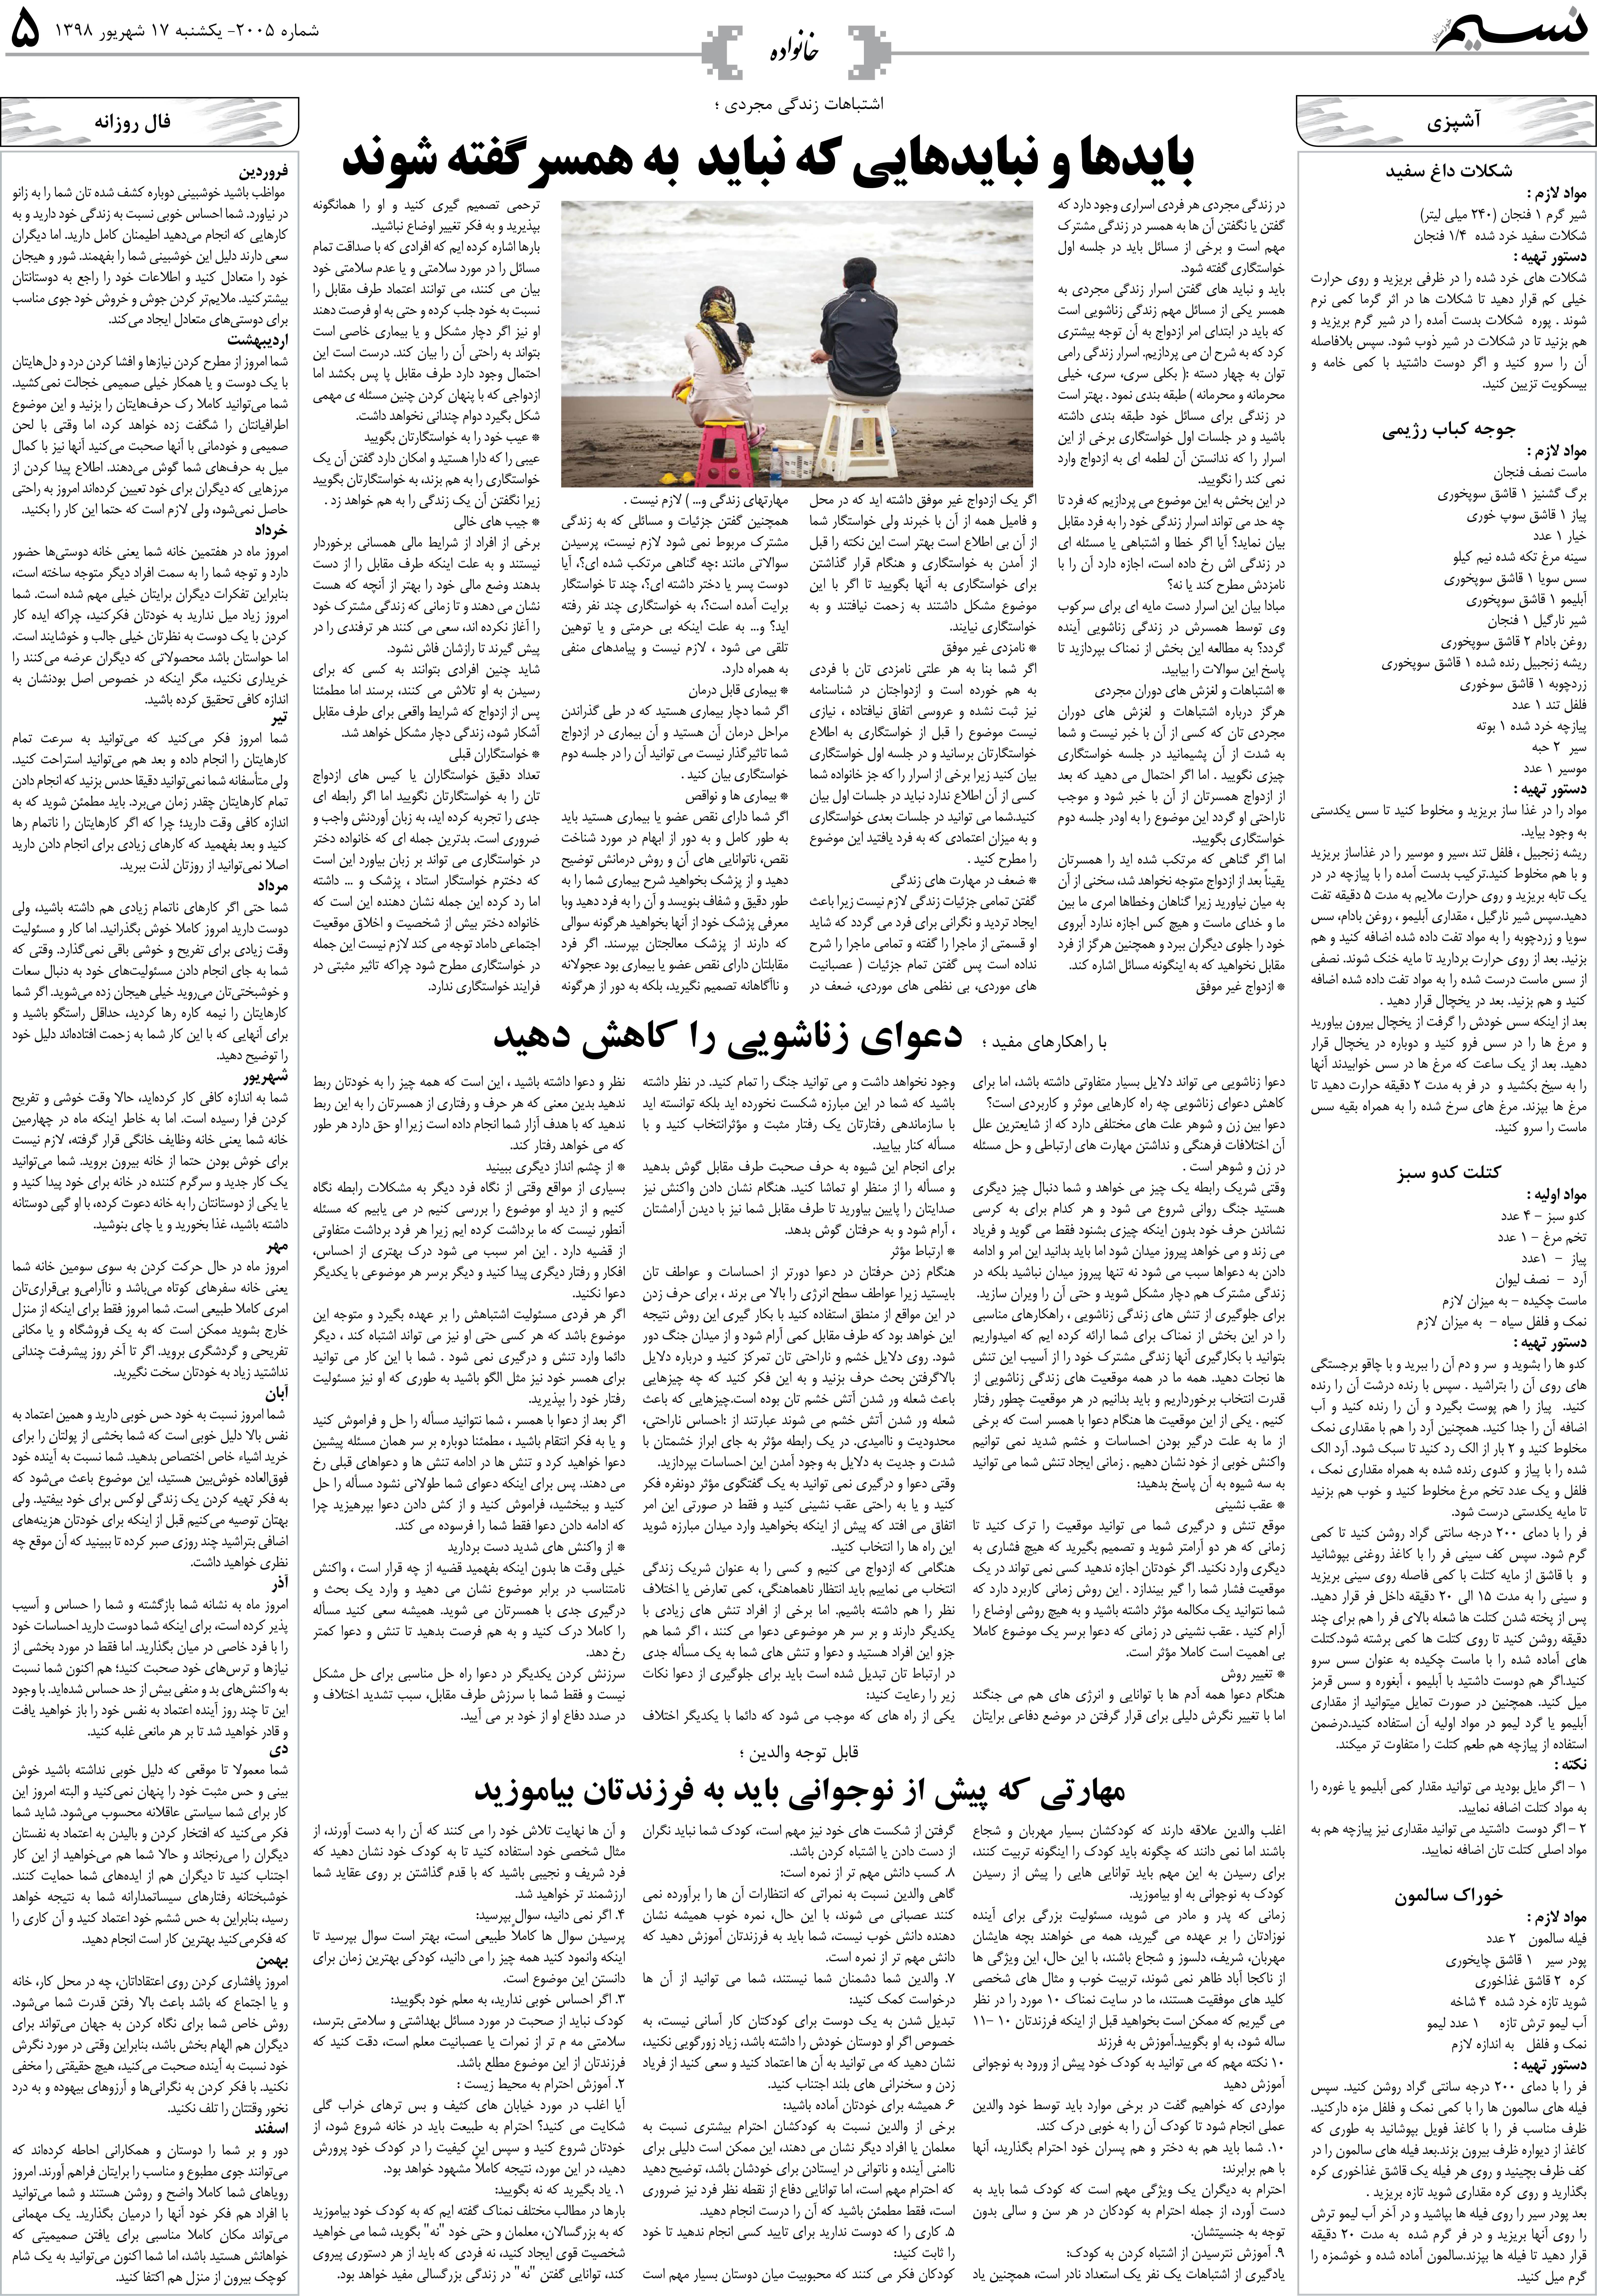 صفحه خانواده روزنامه نسیم شماره 2005